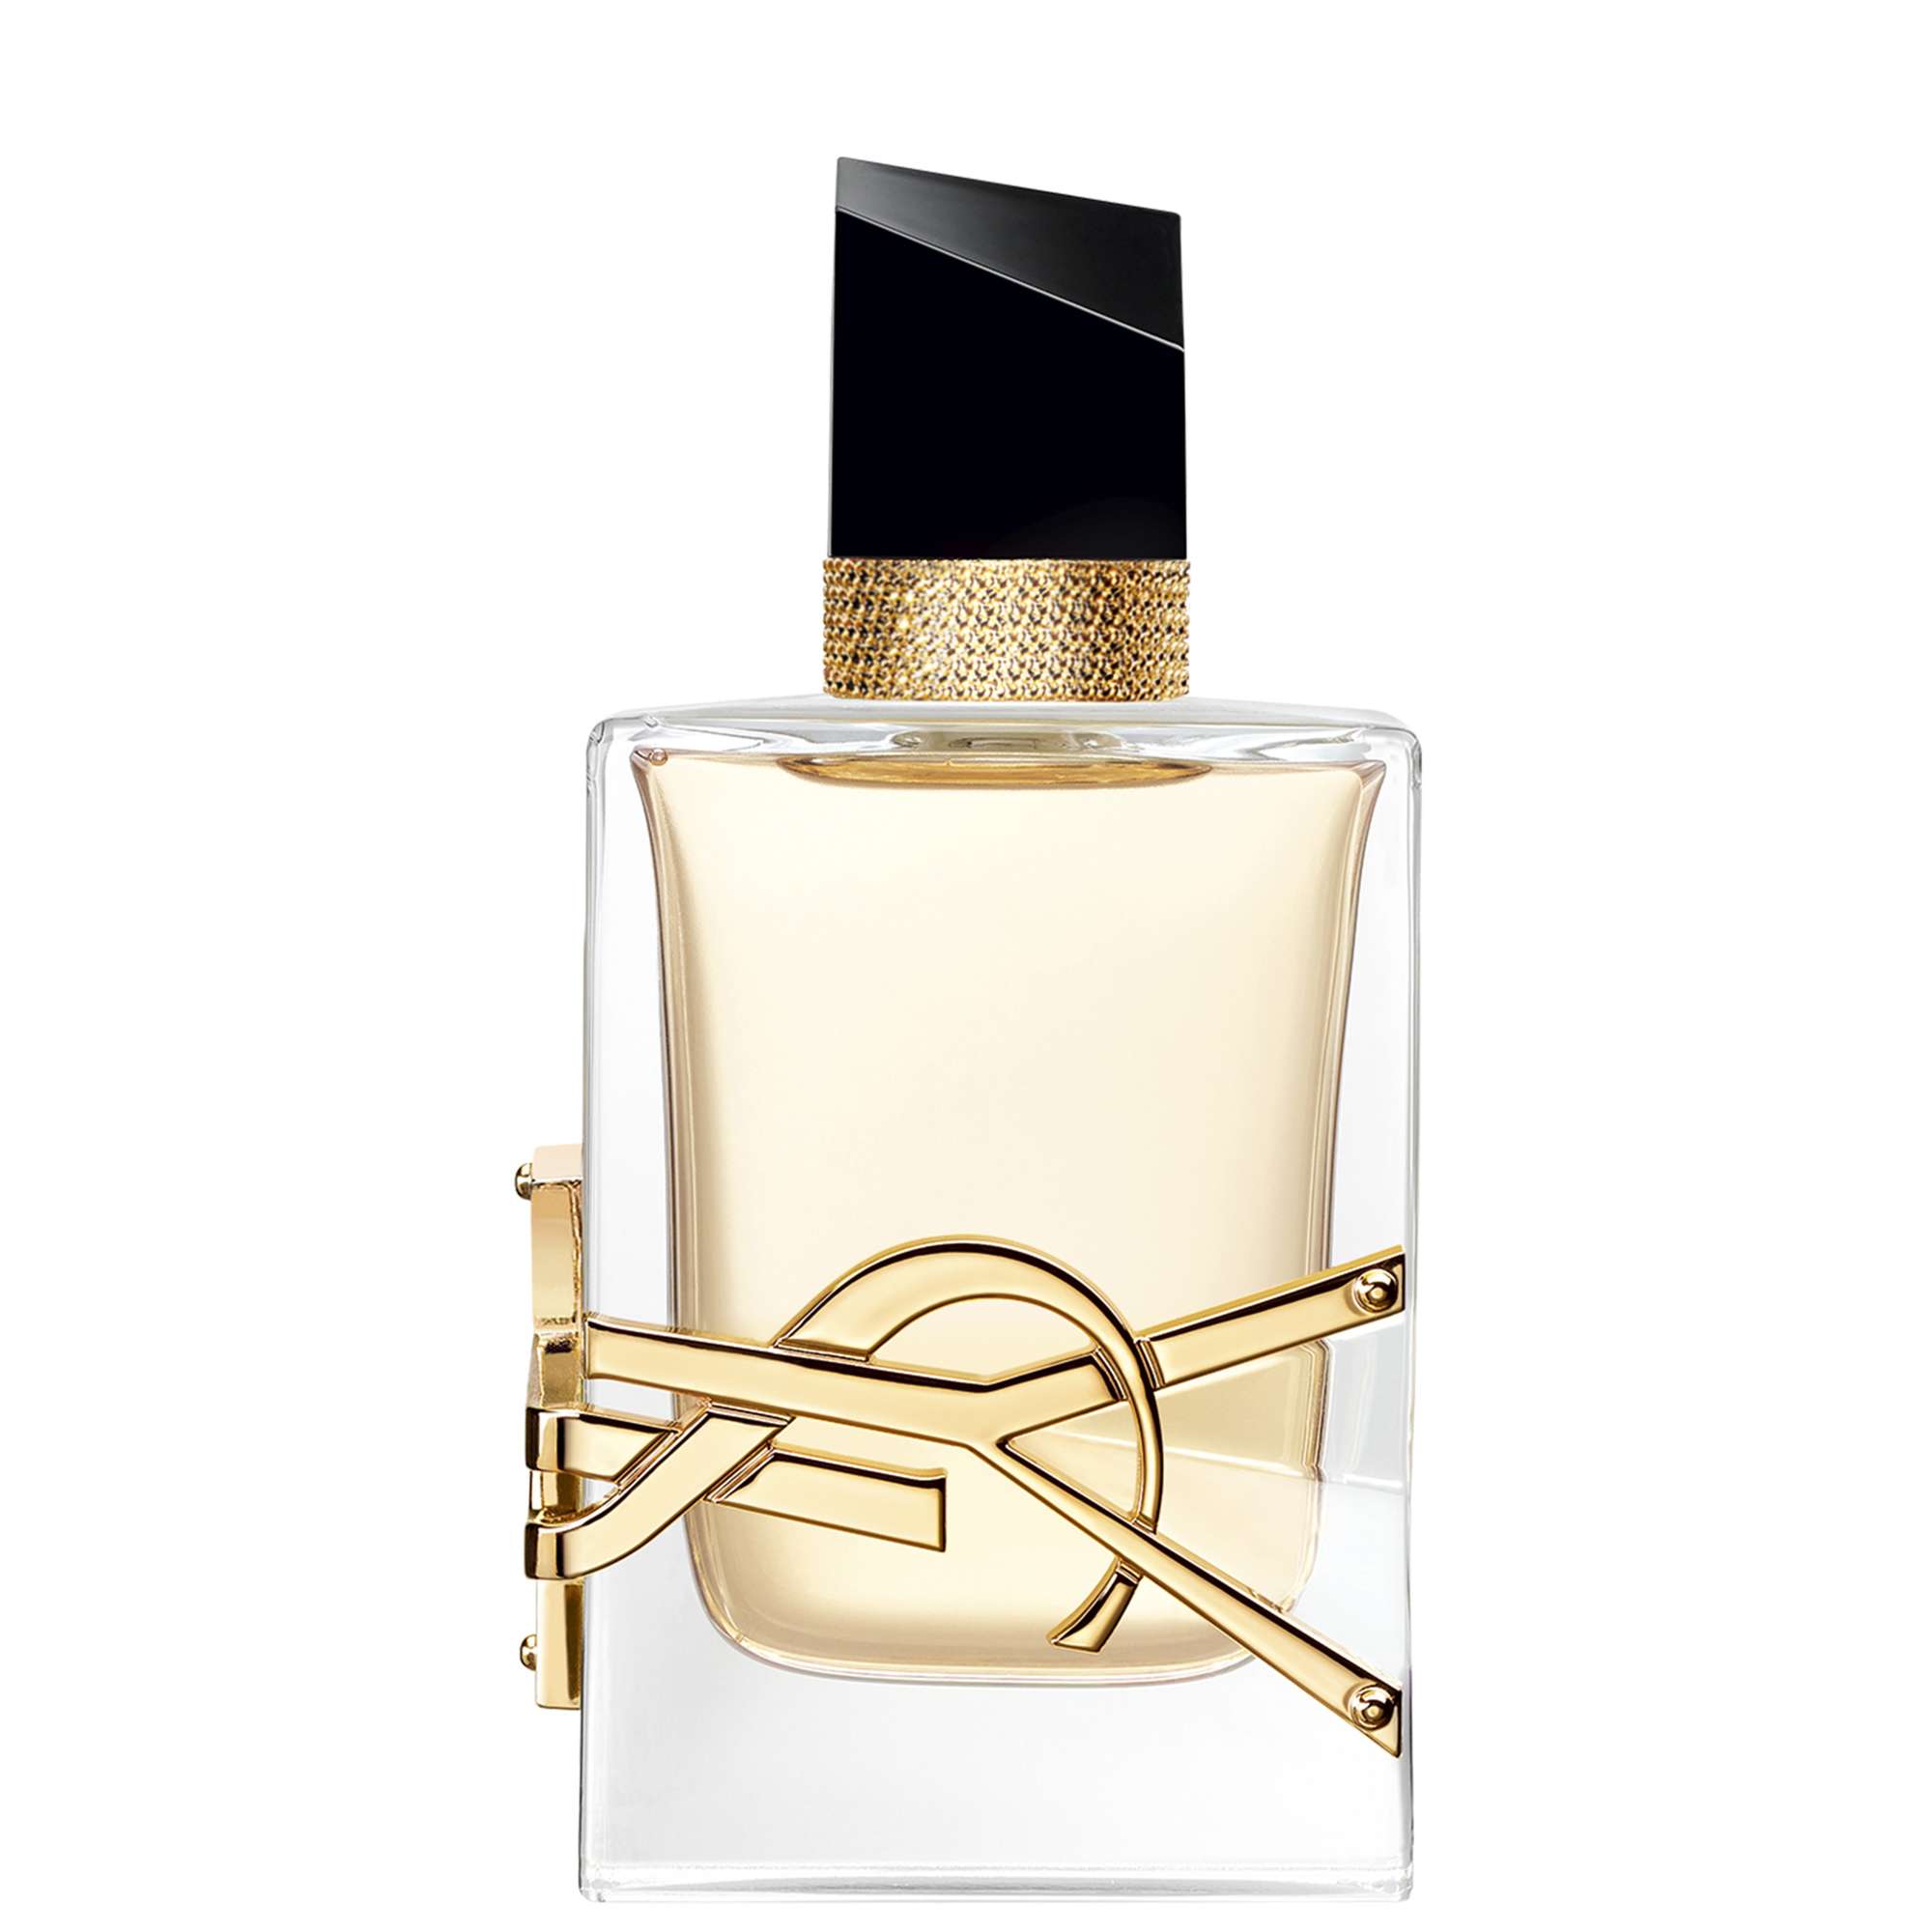 Photos - Women's Fragrance Yves Saint Laurent Libre Eau de Parfum Spray 50ml 